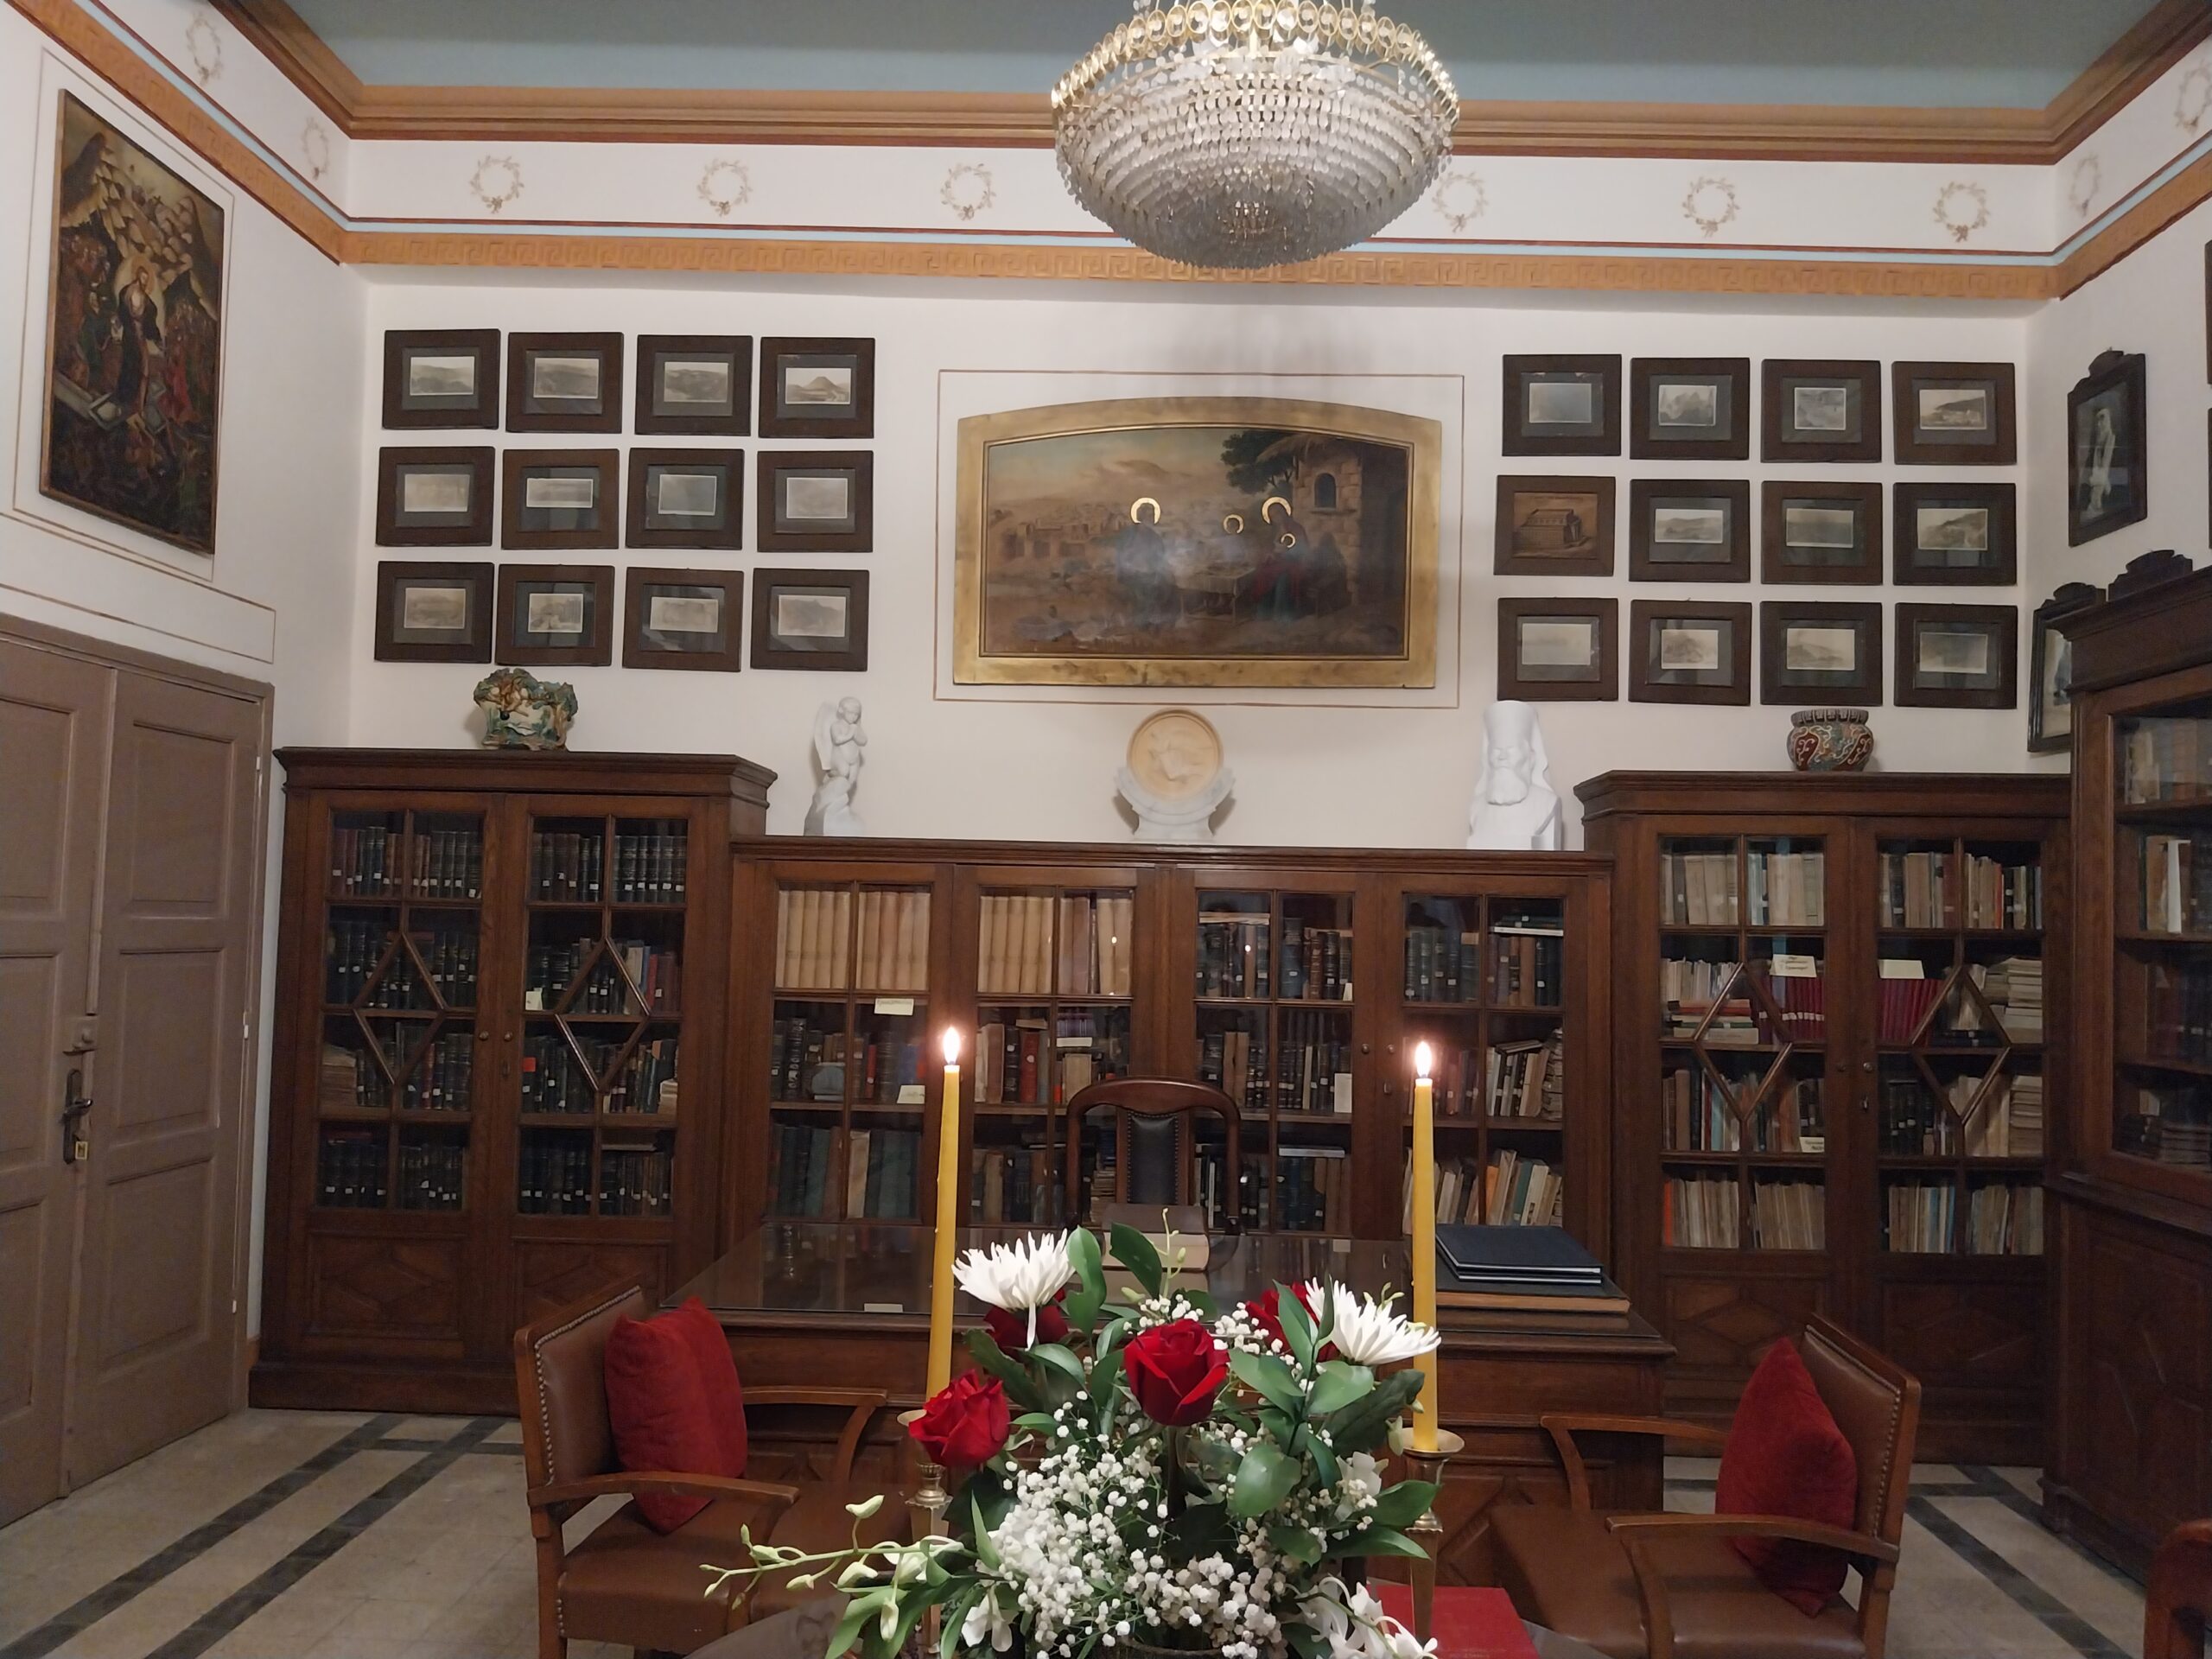 Επαναλειτουργία της Βιβλιοθήκης της Ιεράς Μονής του Αγίου Γεωργίου παλαιού Καΐρου